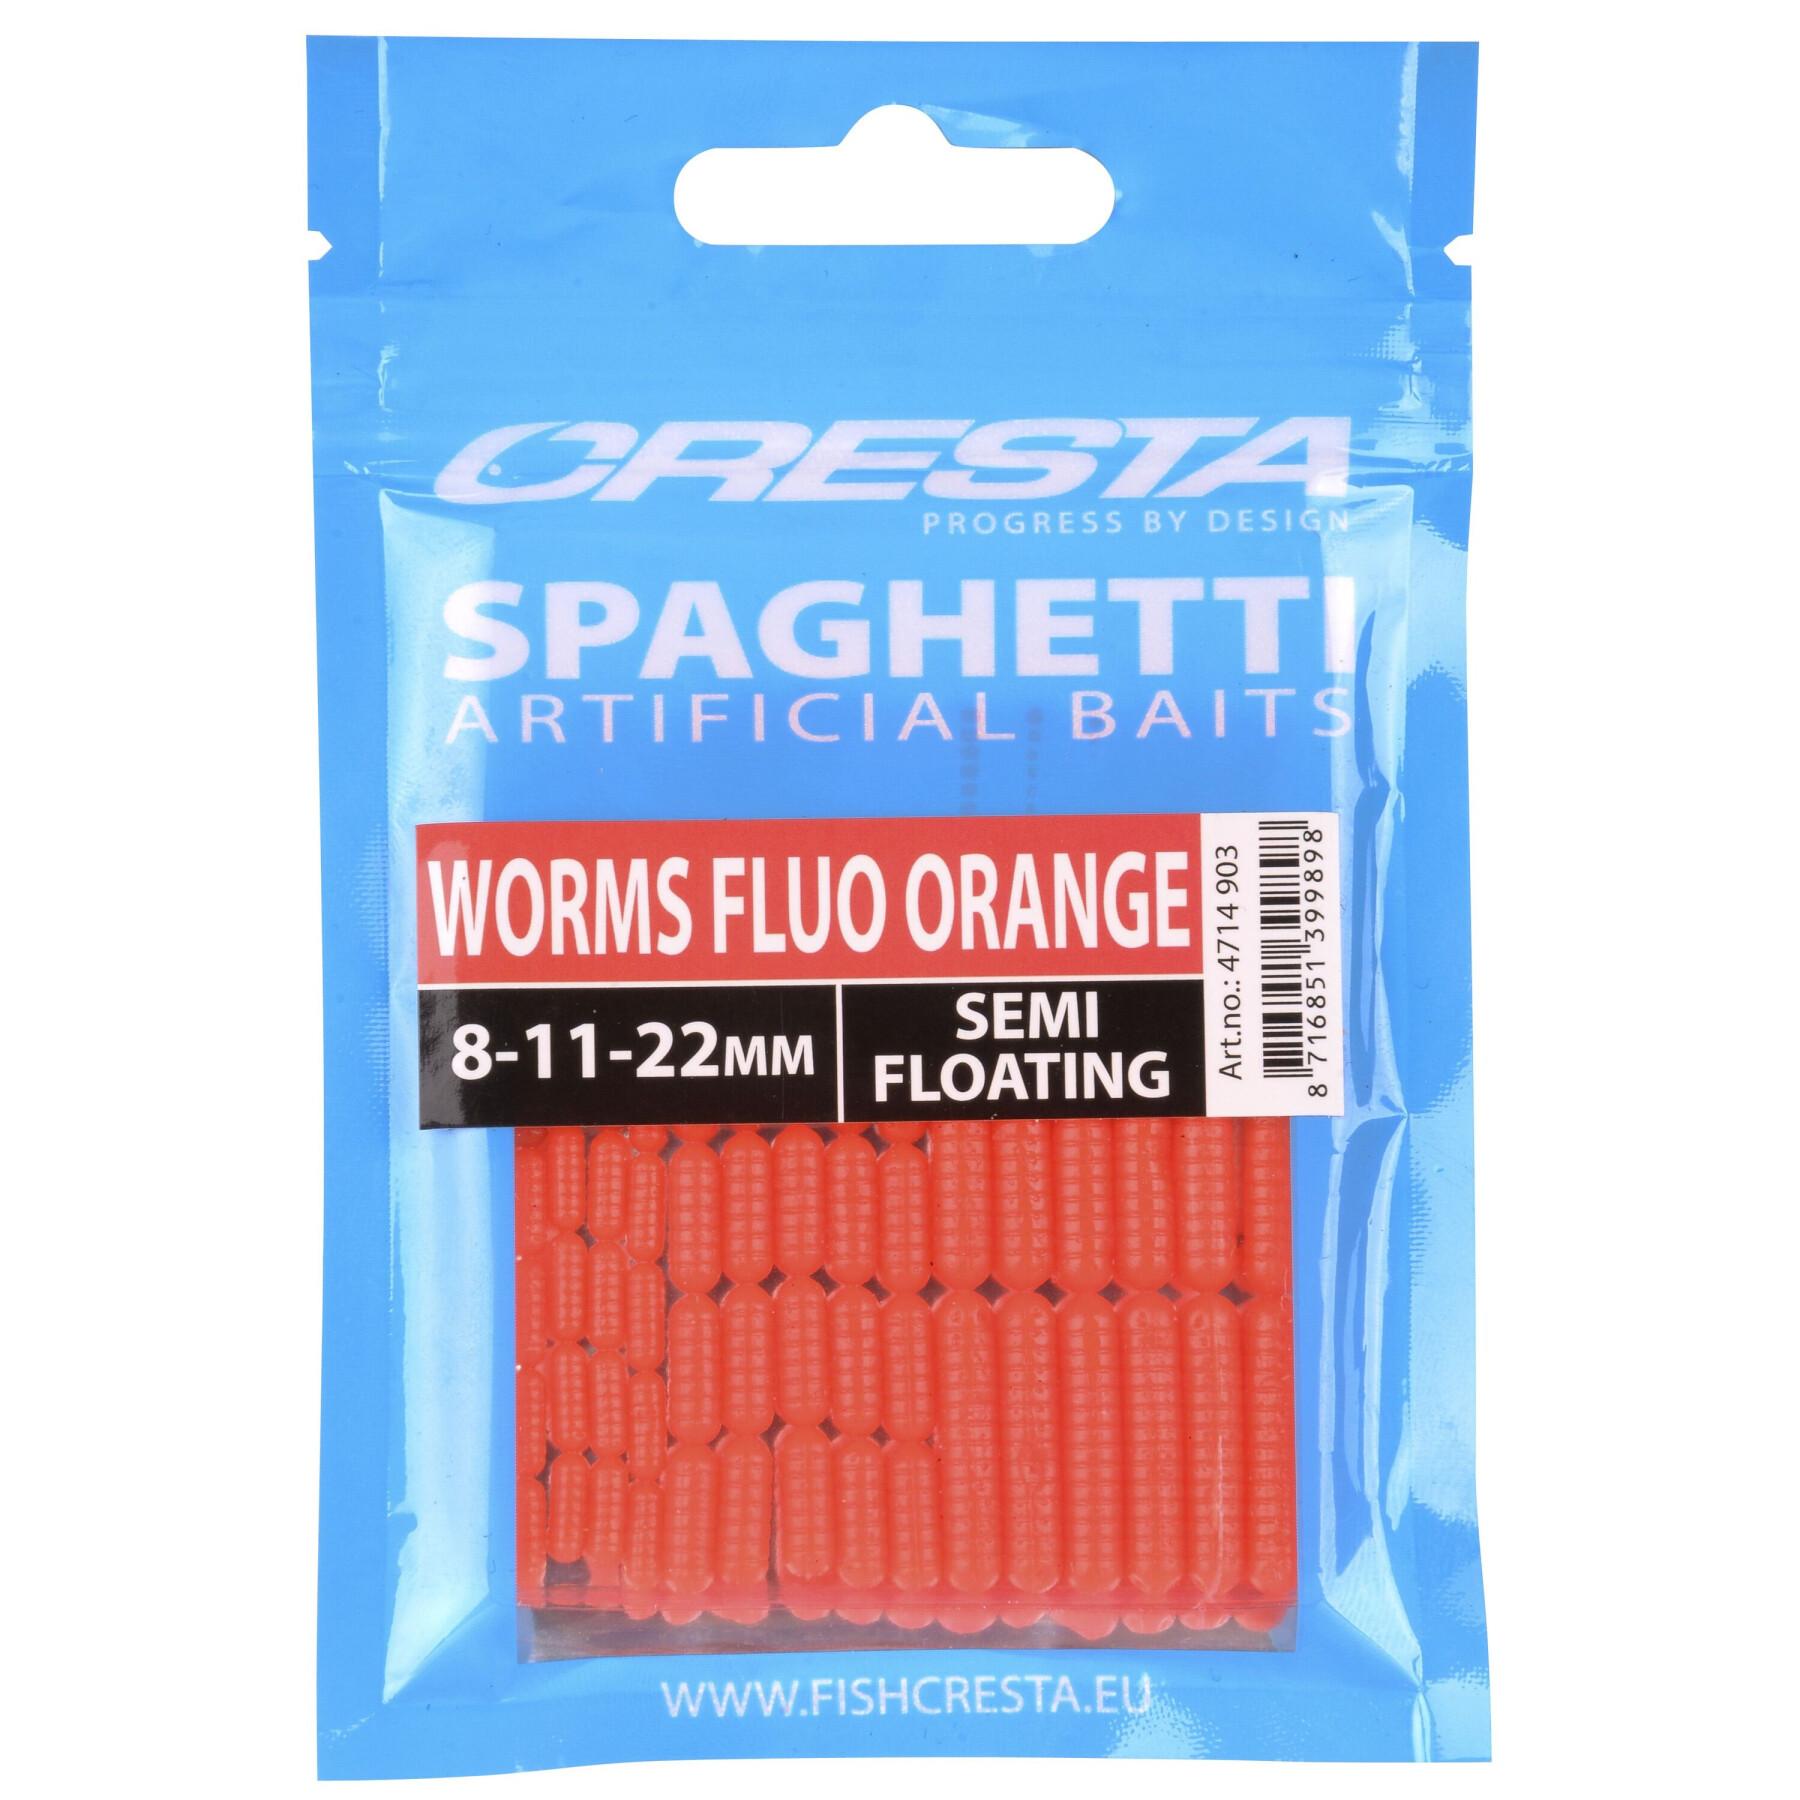 Kunstmatig aas Cresta Spaghetti